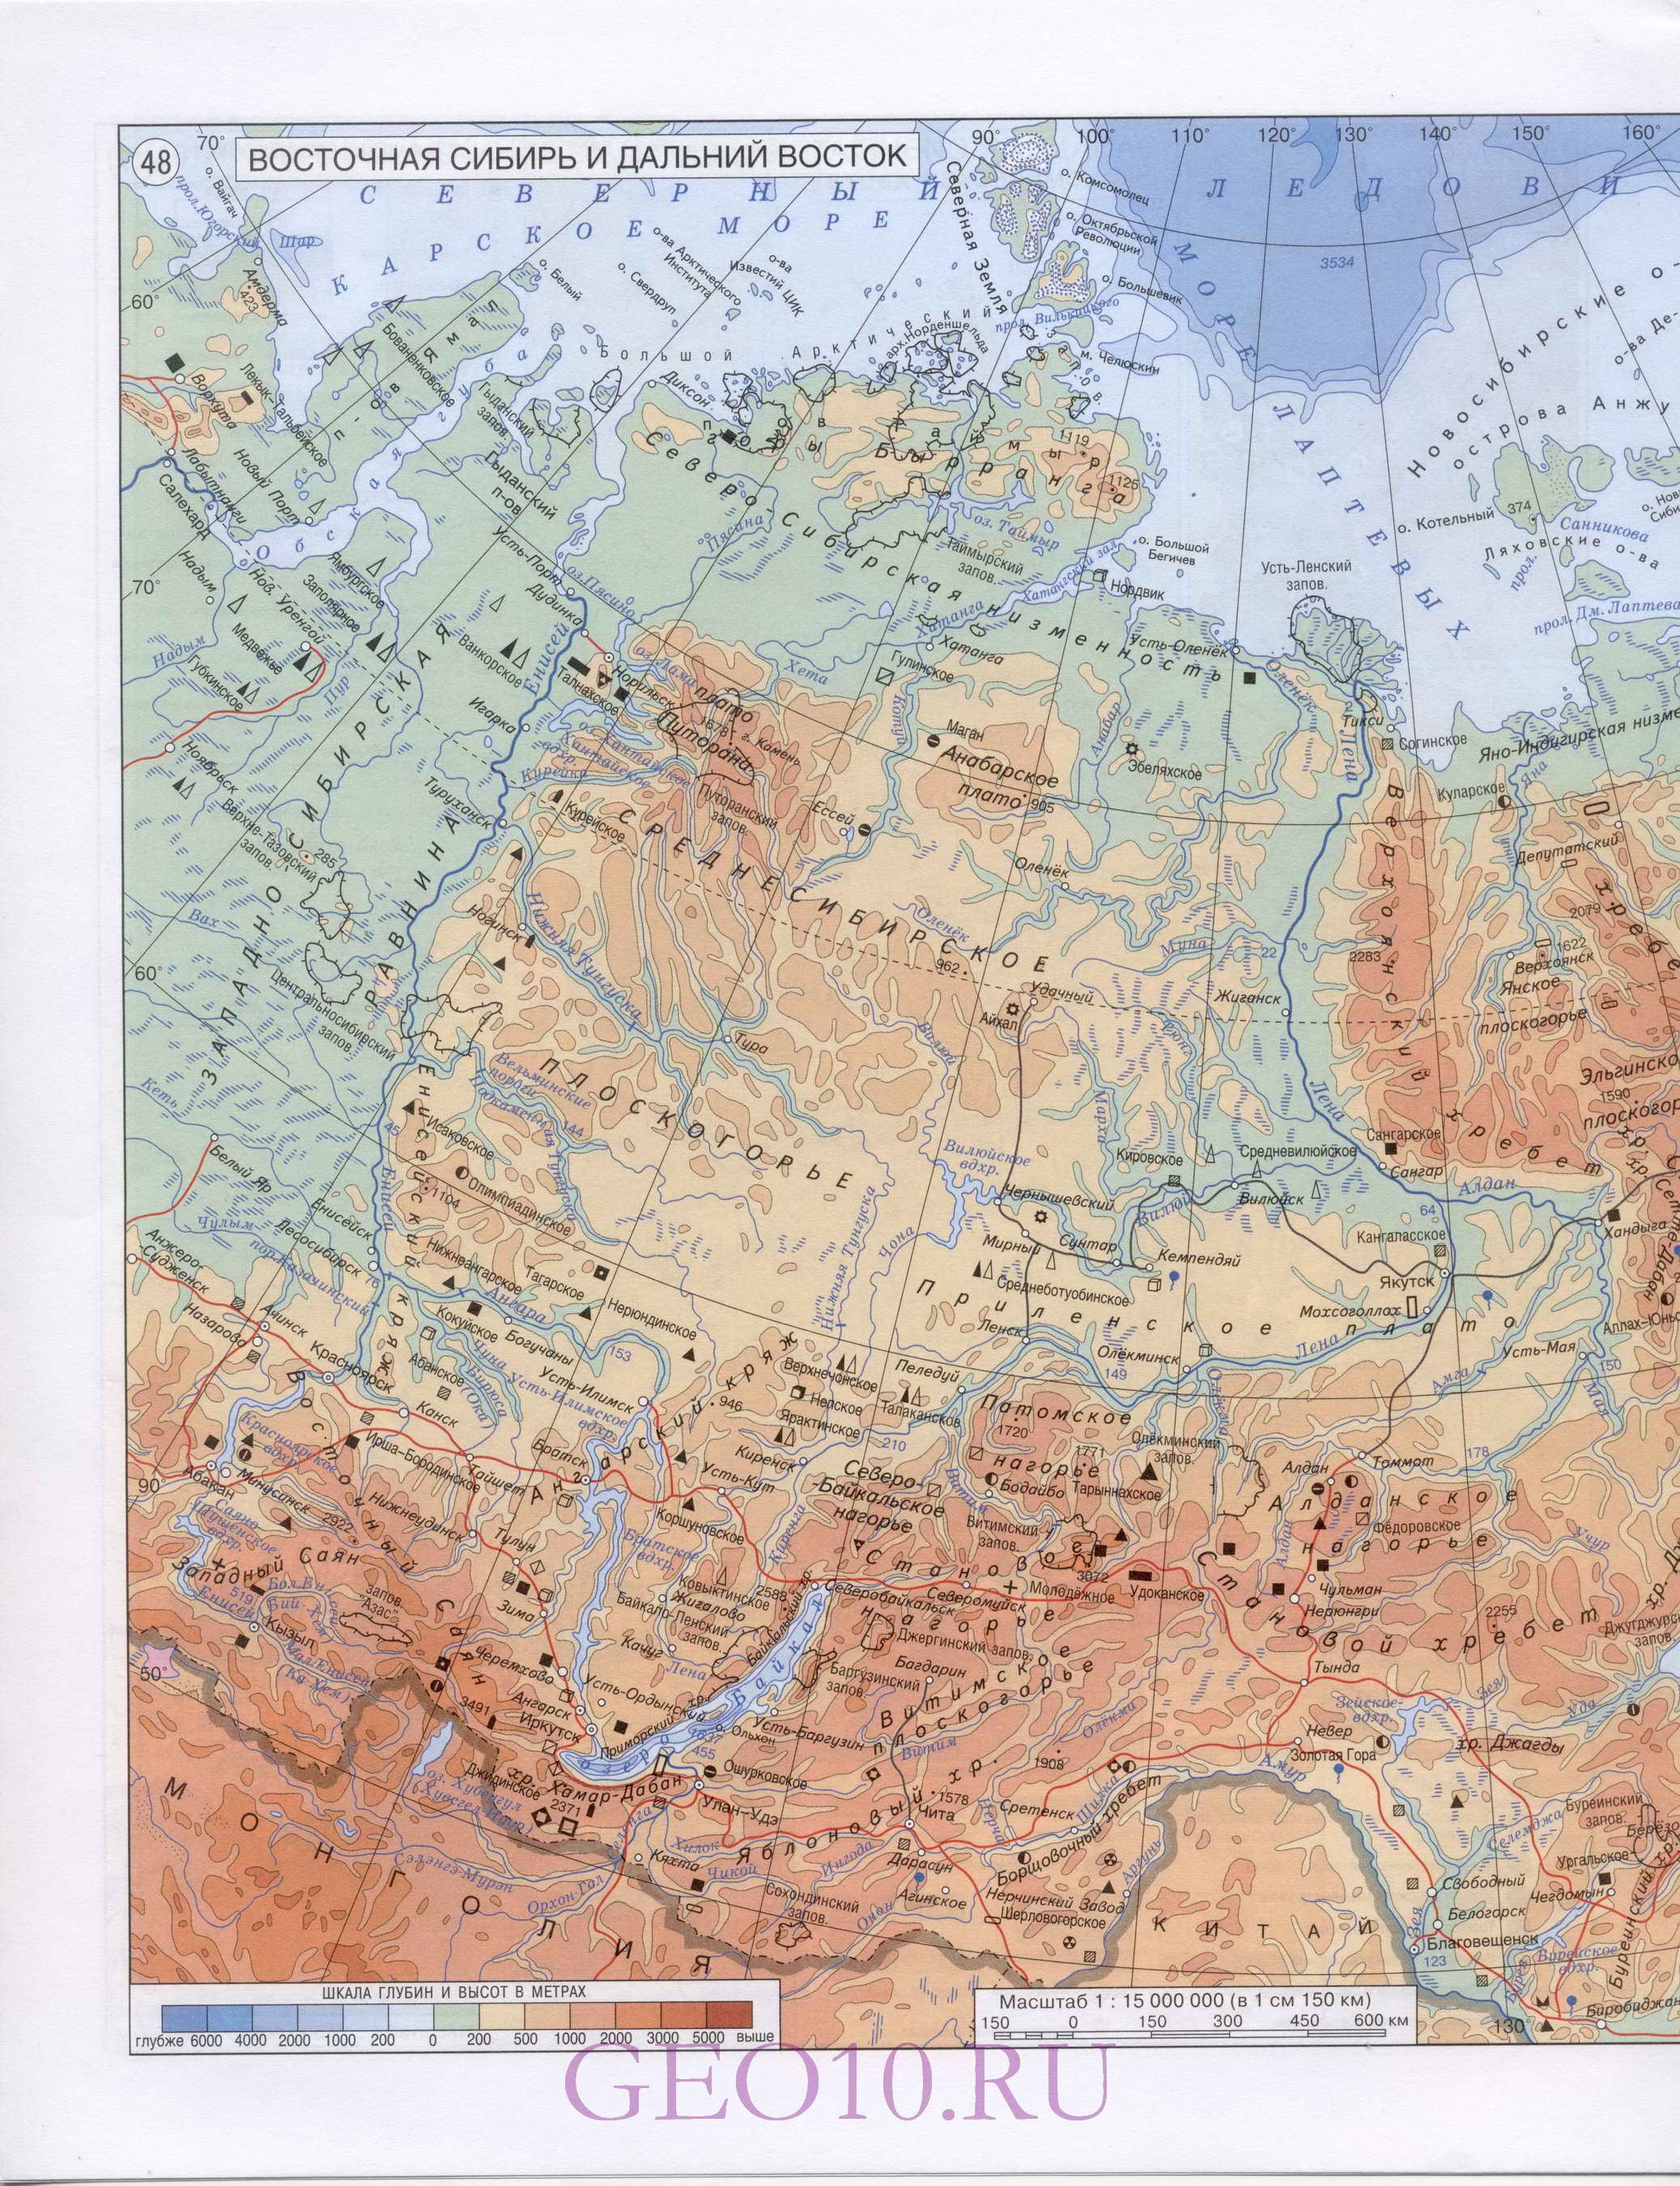 Карта Сибири. Географическая карта - Западная Сибирь и Восточная Сибирь.Большая подробная карта Западной Сибири �� Восточной